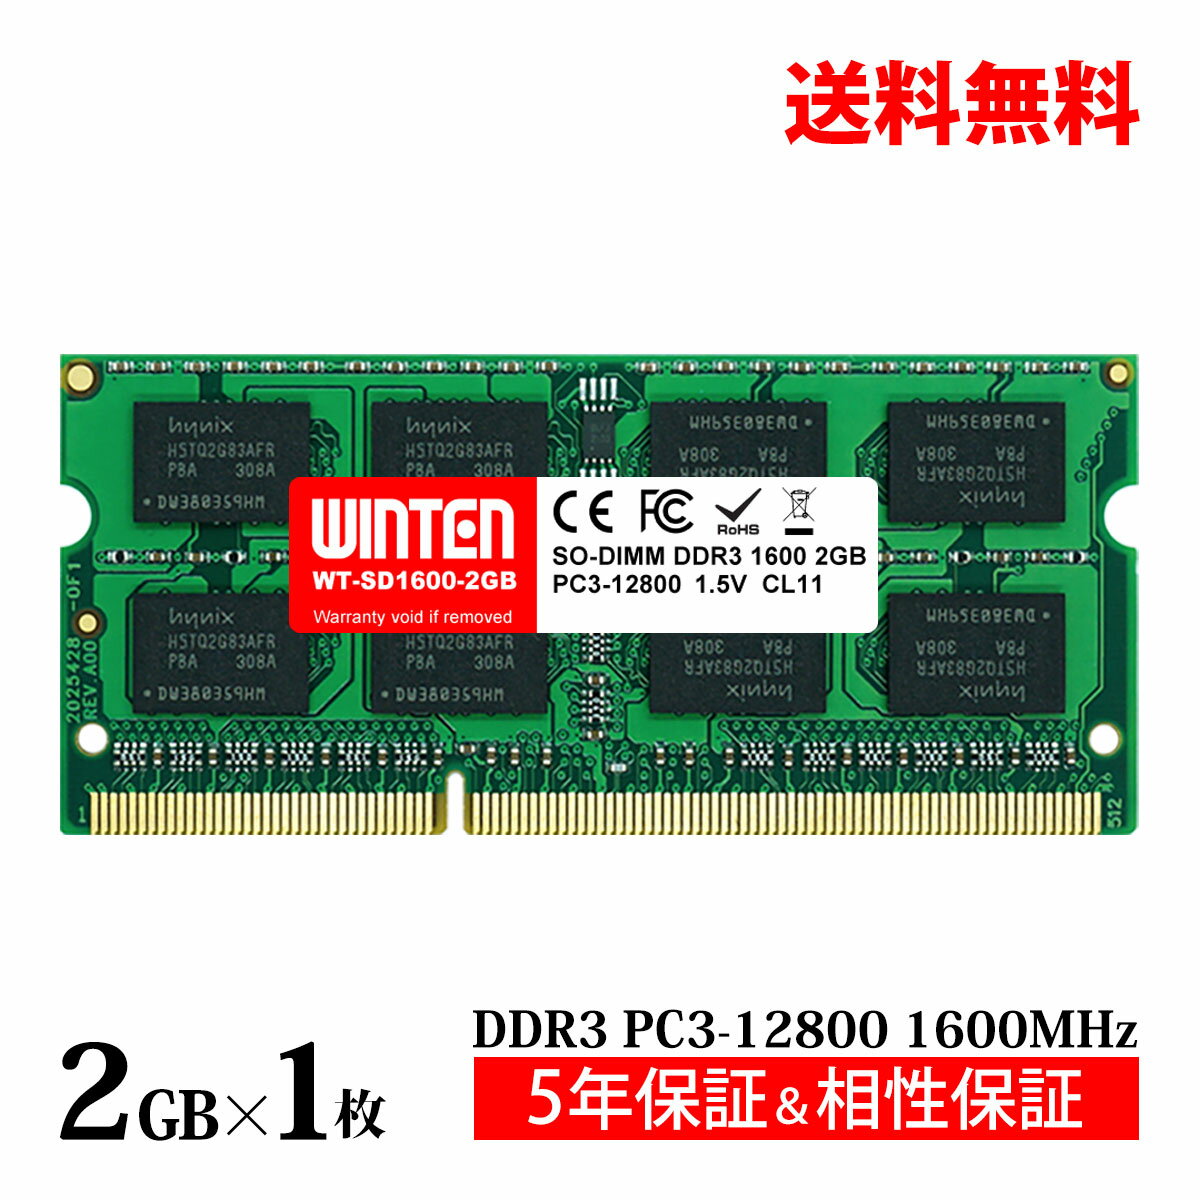 ノートPC用 メモリ 2GB PC3-12800(DDR3 1600) WT-SD1600-2GB【相性保証 製品5年保証 送料無料 即日出荷】DDR3 SDRAM SO-DIMM 内蔵メモリー 増設メモリー 4201